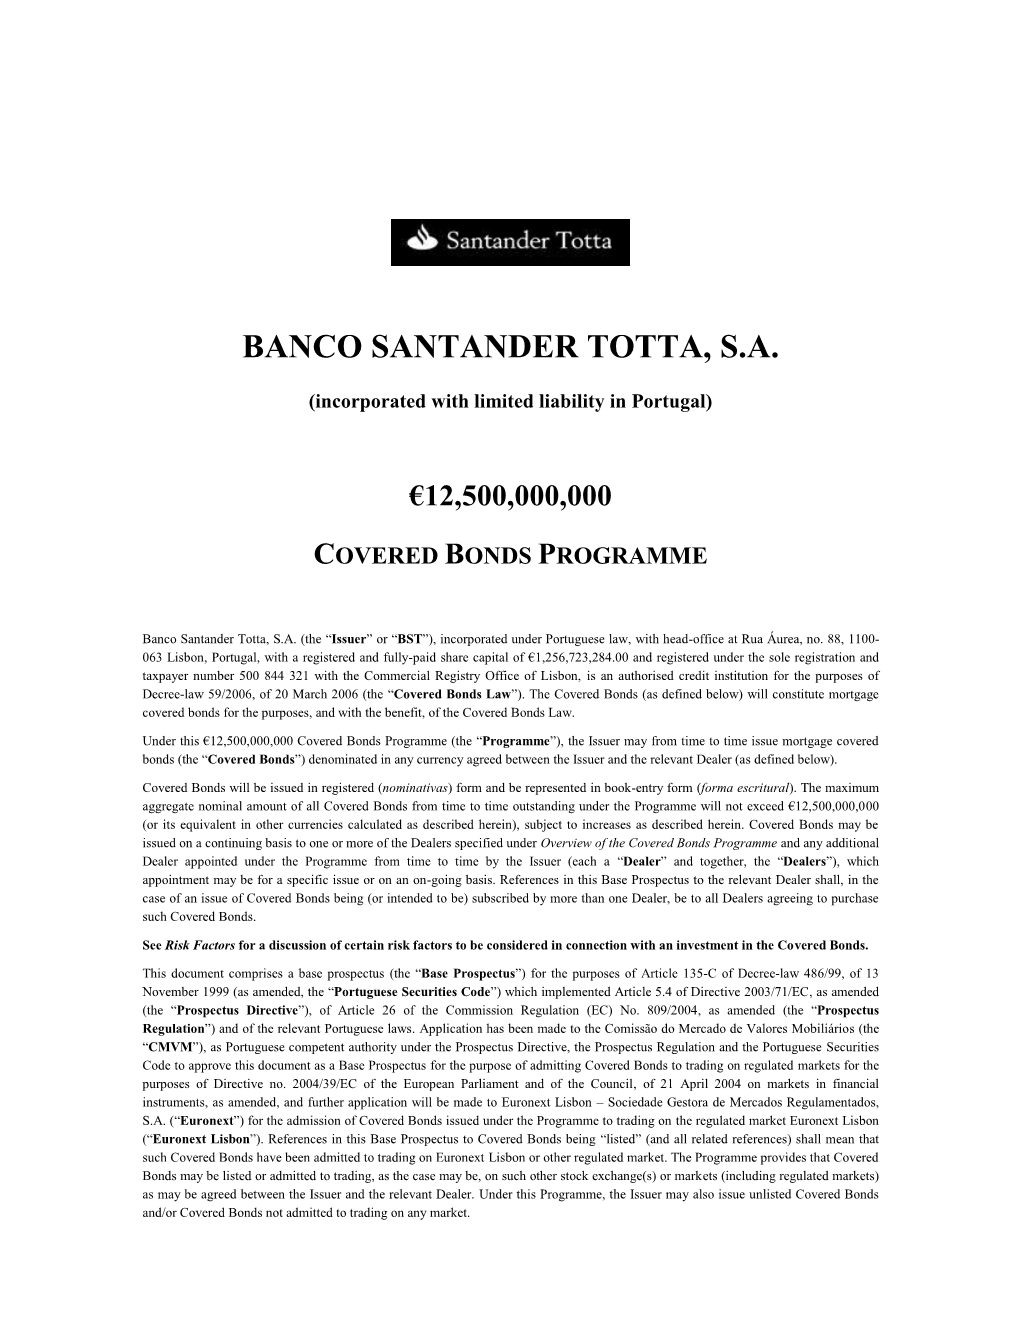 Banco Santander Totta, S.A. Informa Sobre Aprovação Do Prospeto De Base Para Admissão À Negociação Em Mercado Regulamentad